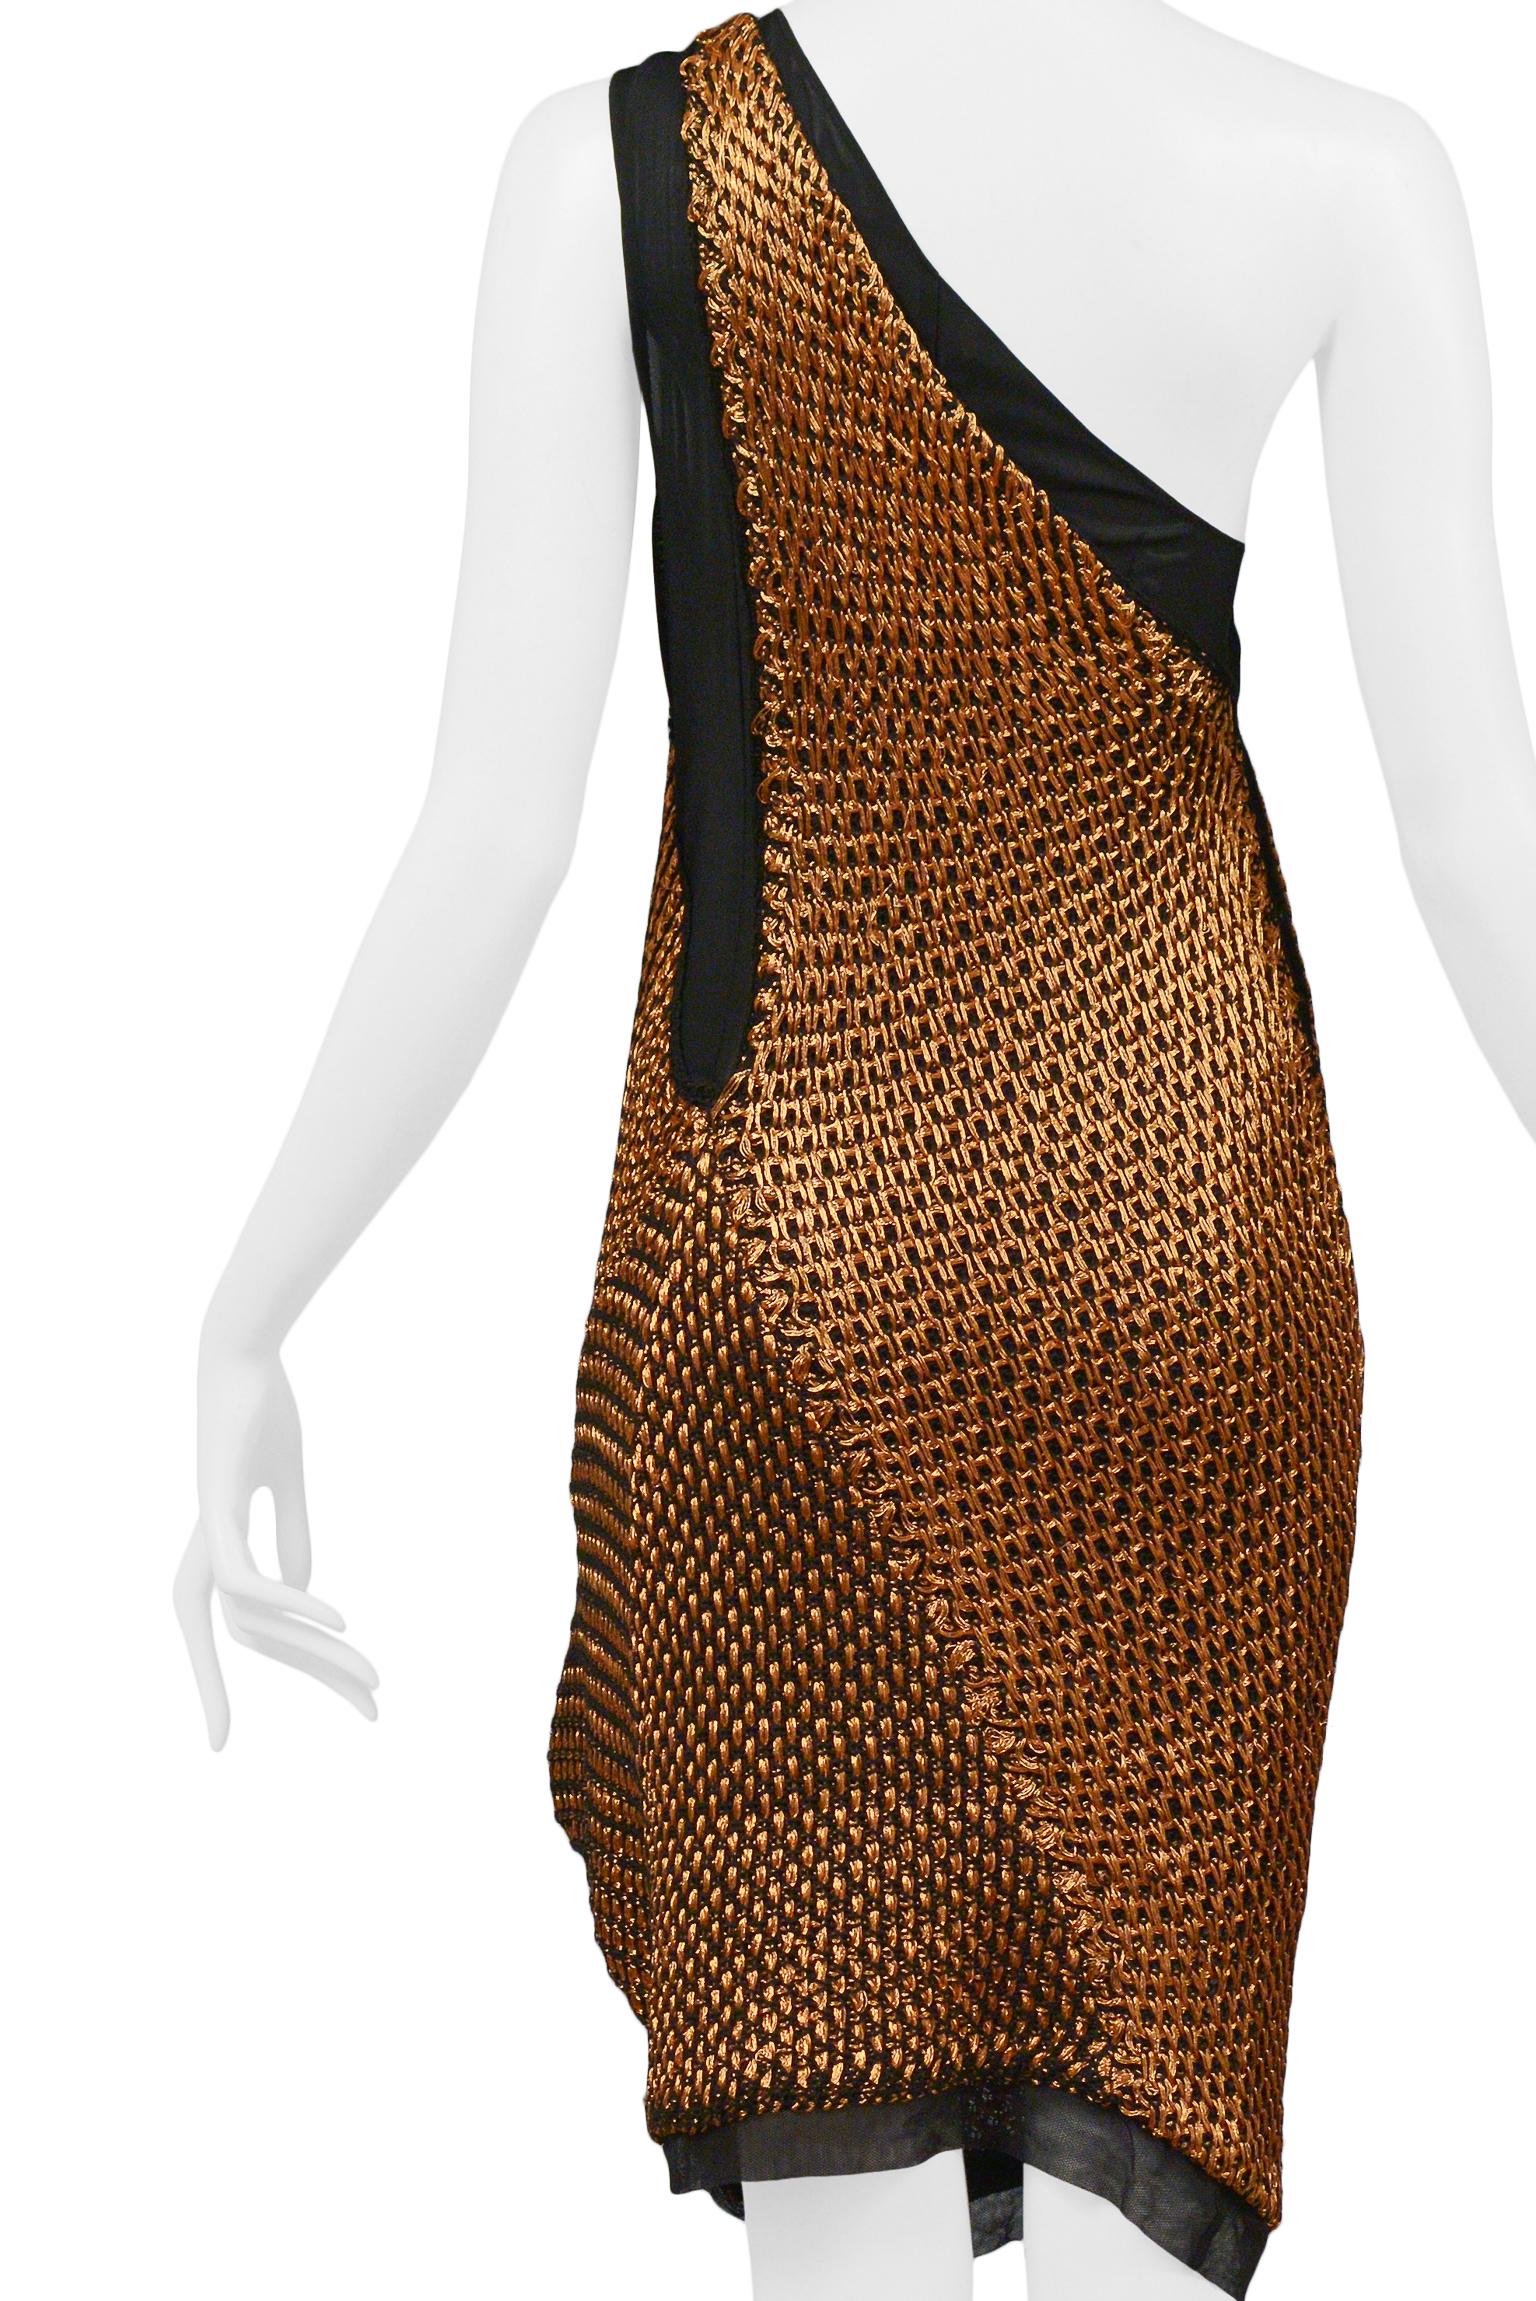 Balenciaga By Nicolas Ghesquiere Copper Wire Crochet Dress 2007 For Sale 2